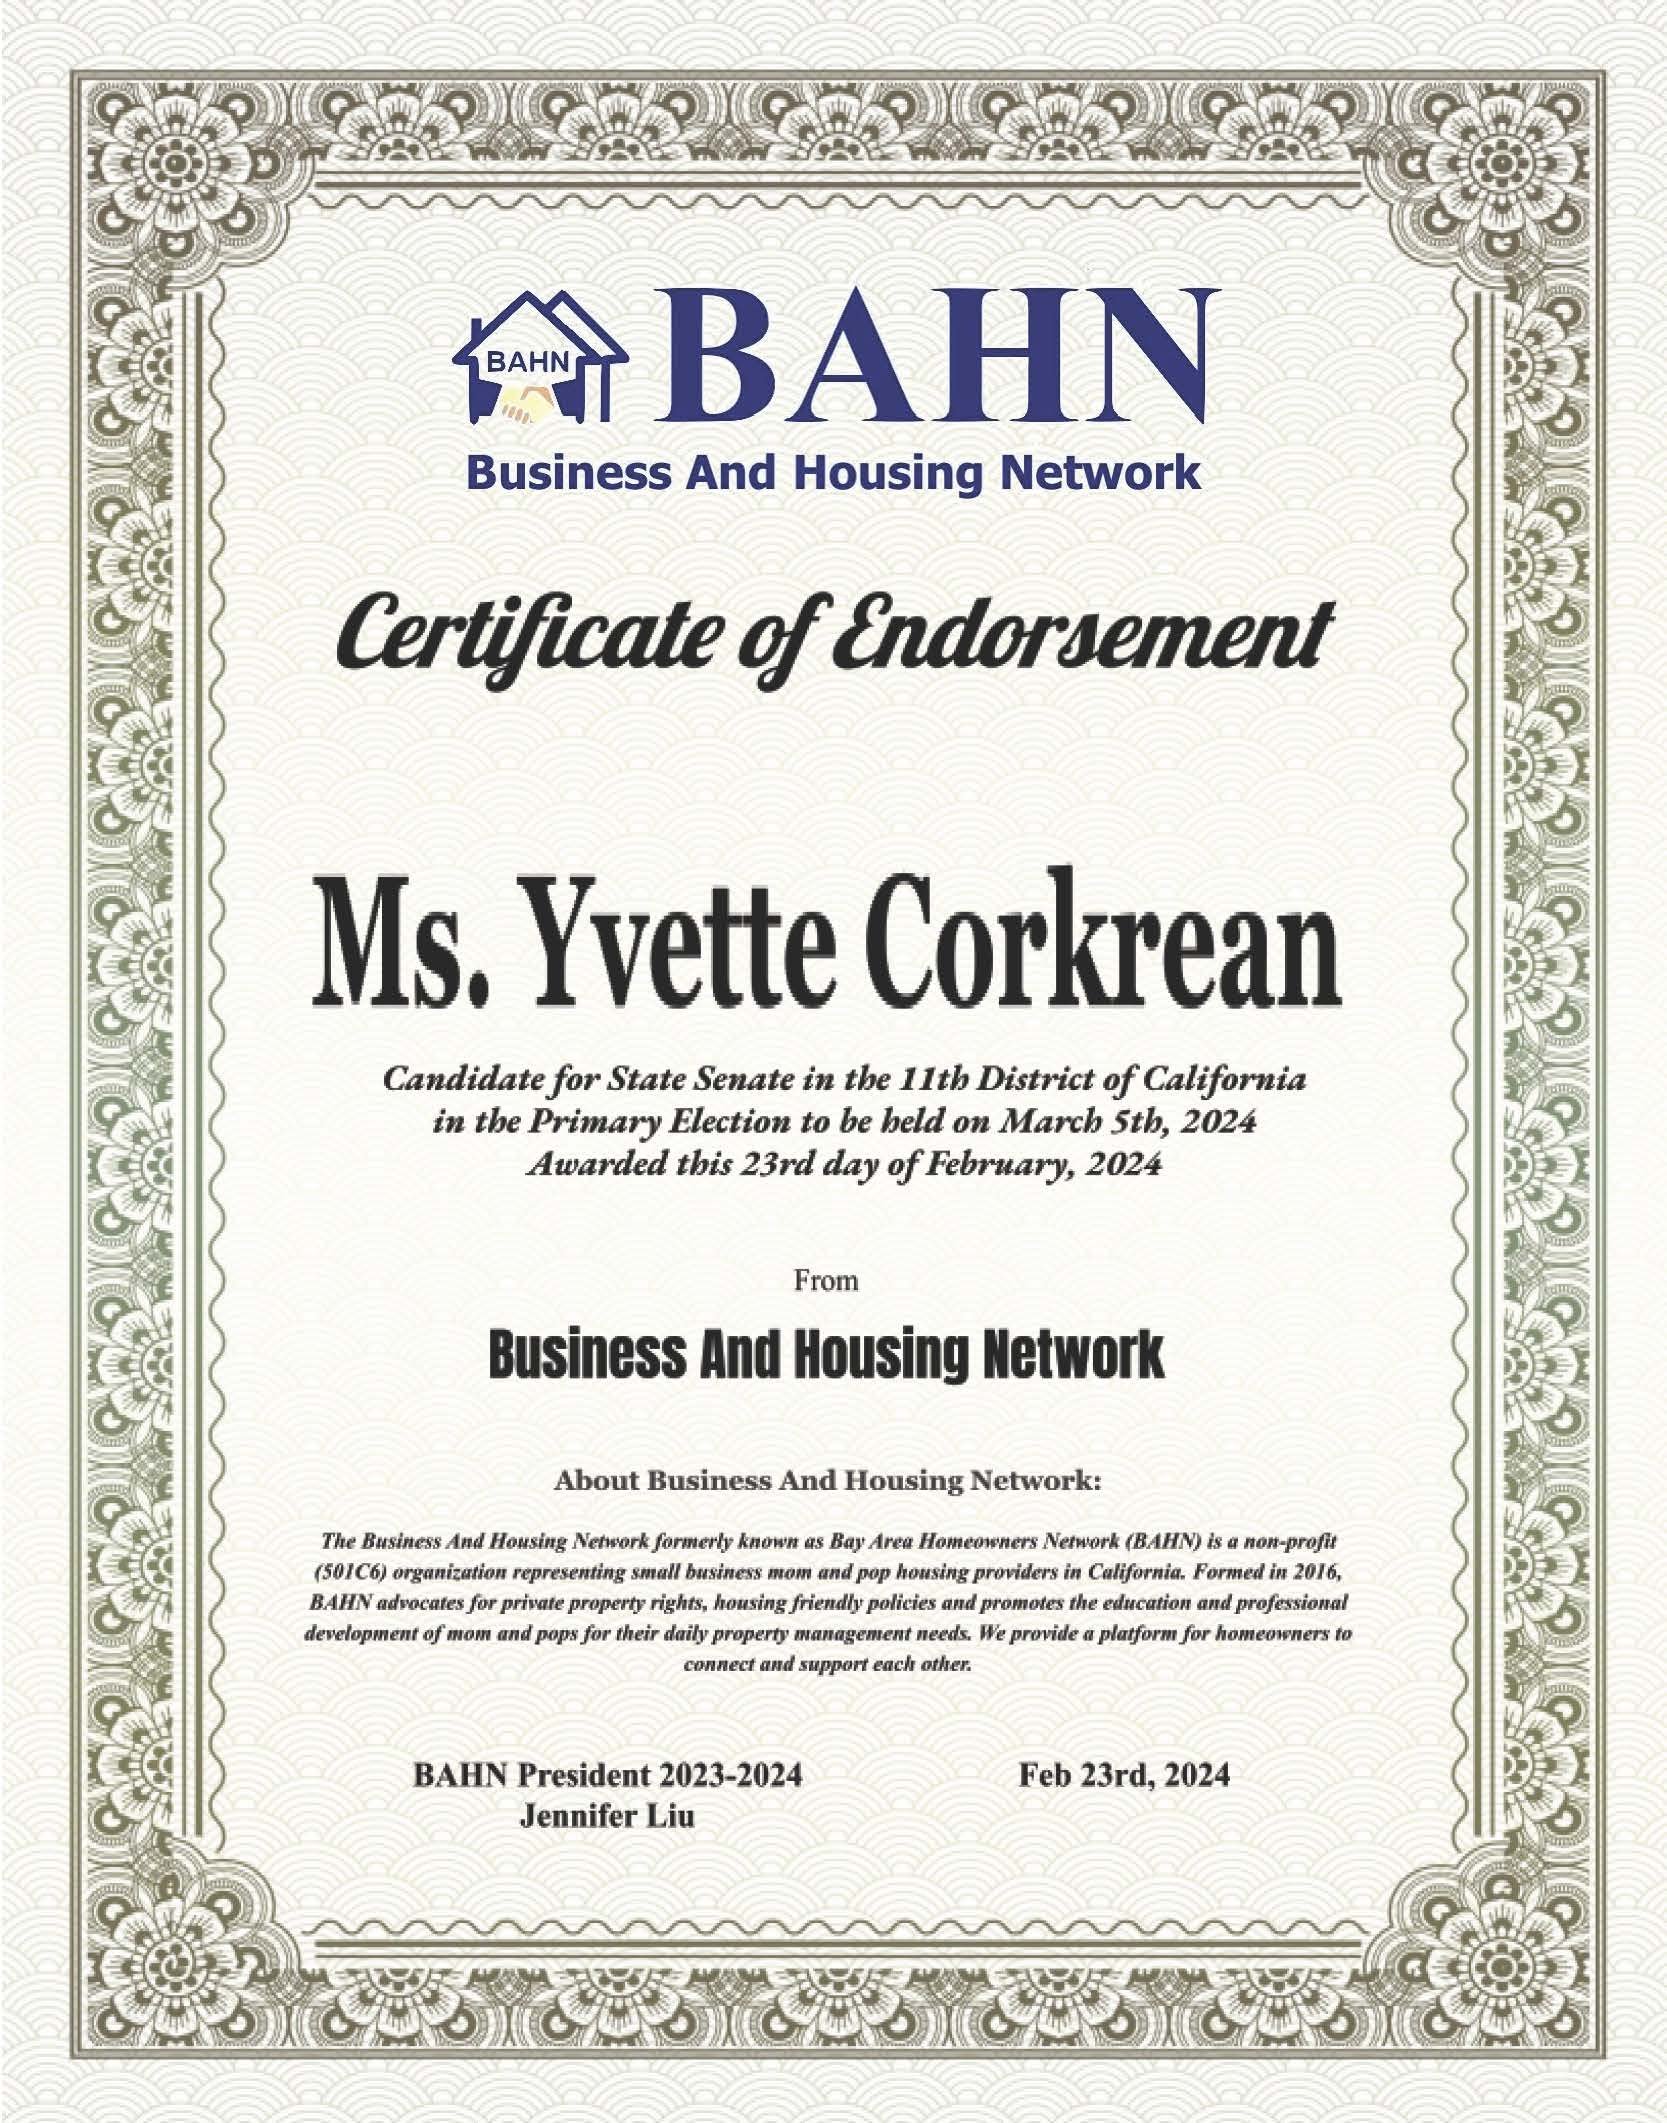 BAHN Endorsment for Yvette Corkrean.jpg